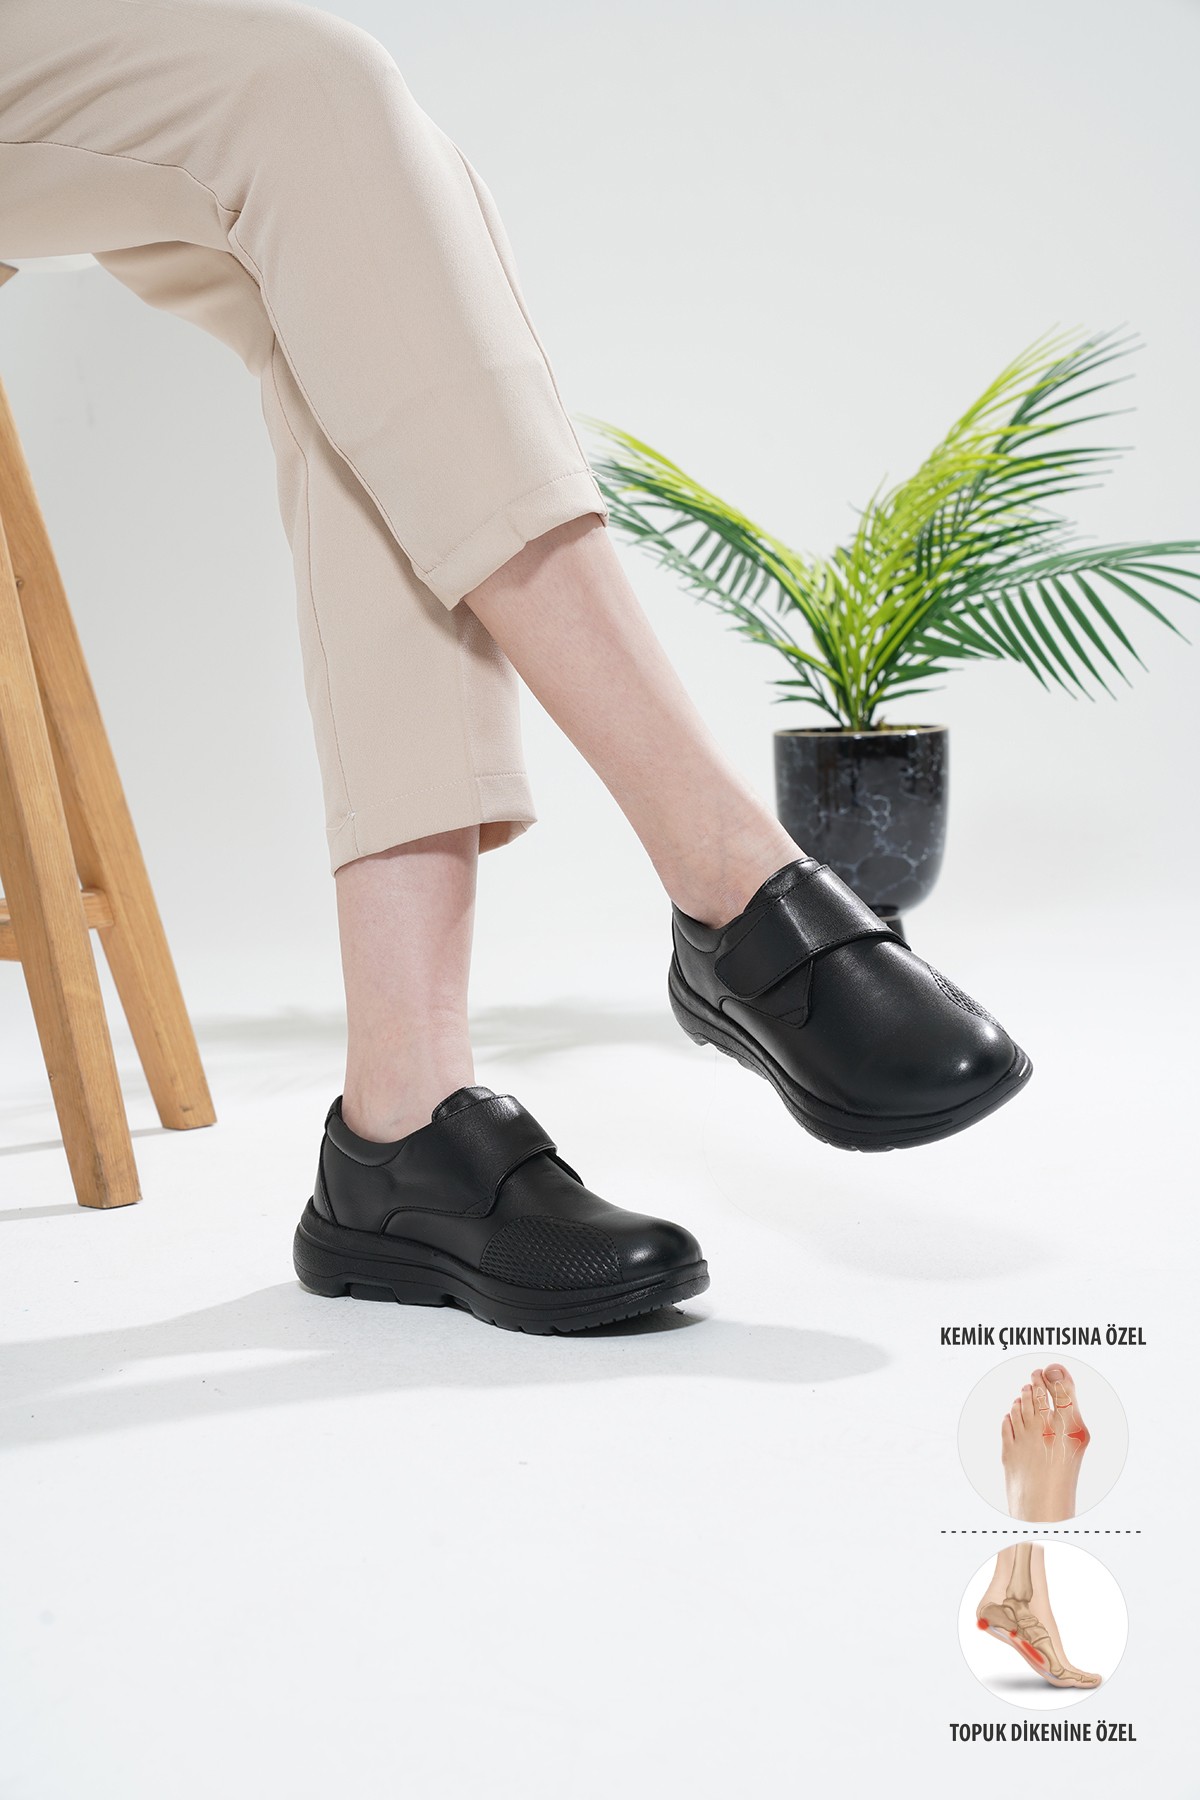 Mira Ortopedik Kadın Deri Ayakkabı Topuk Dikeni Kemik Çıkıntısı Diyabet Hastaları İçin Uygundur